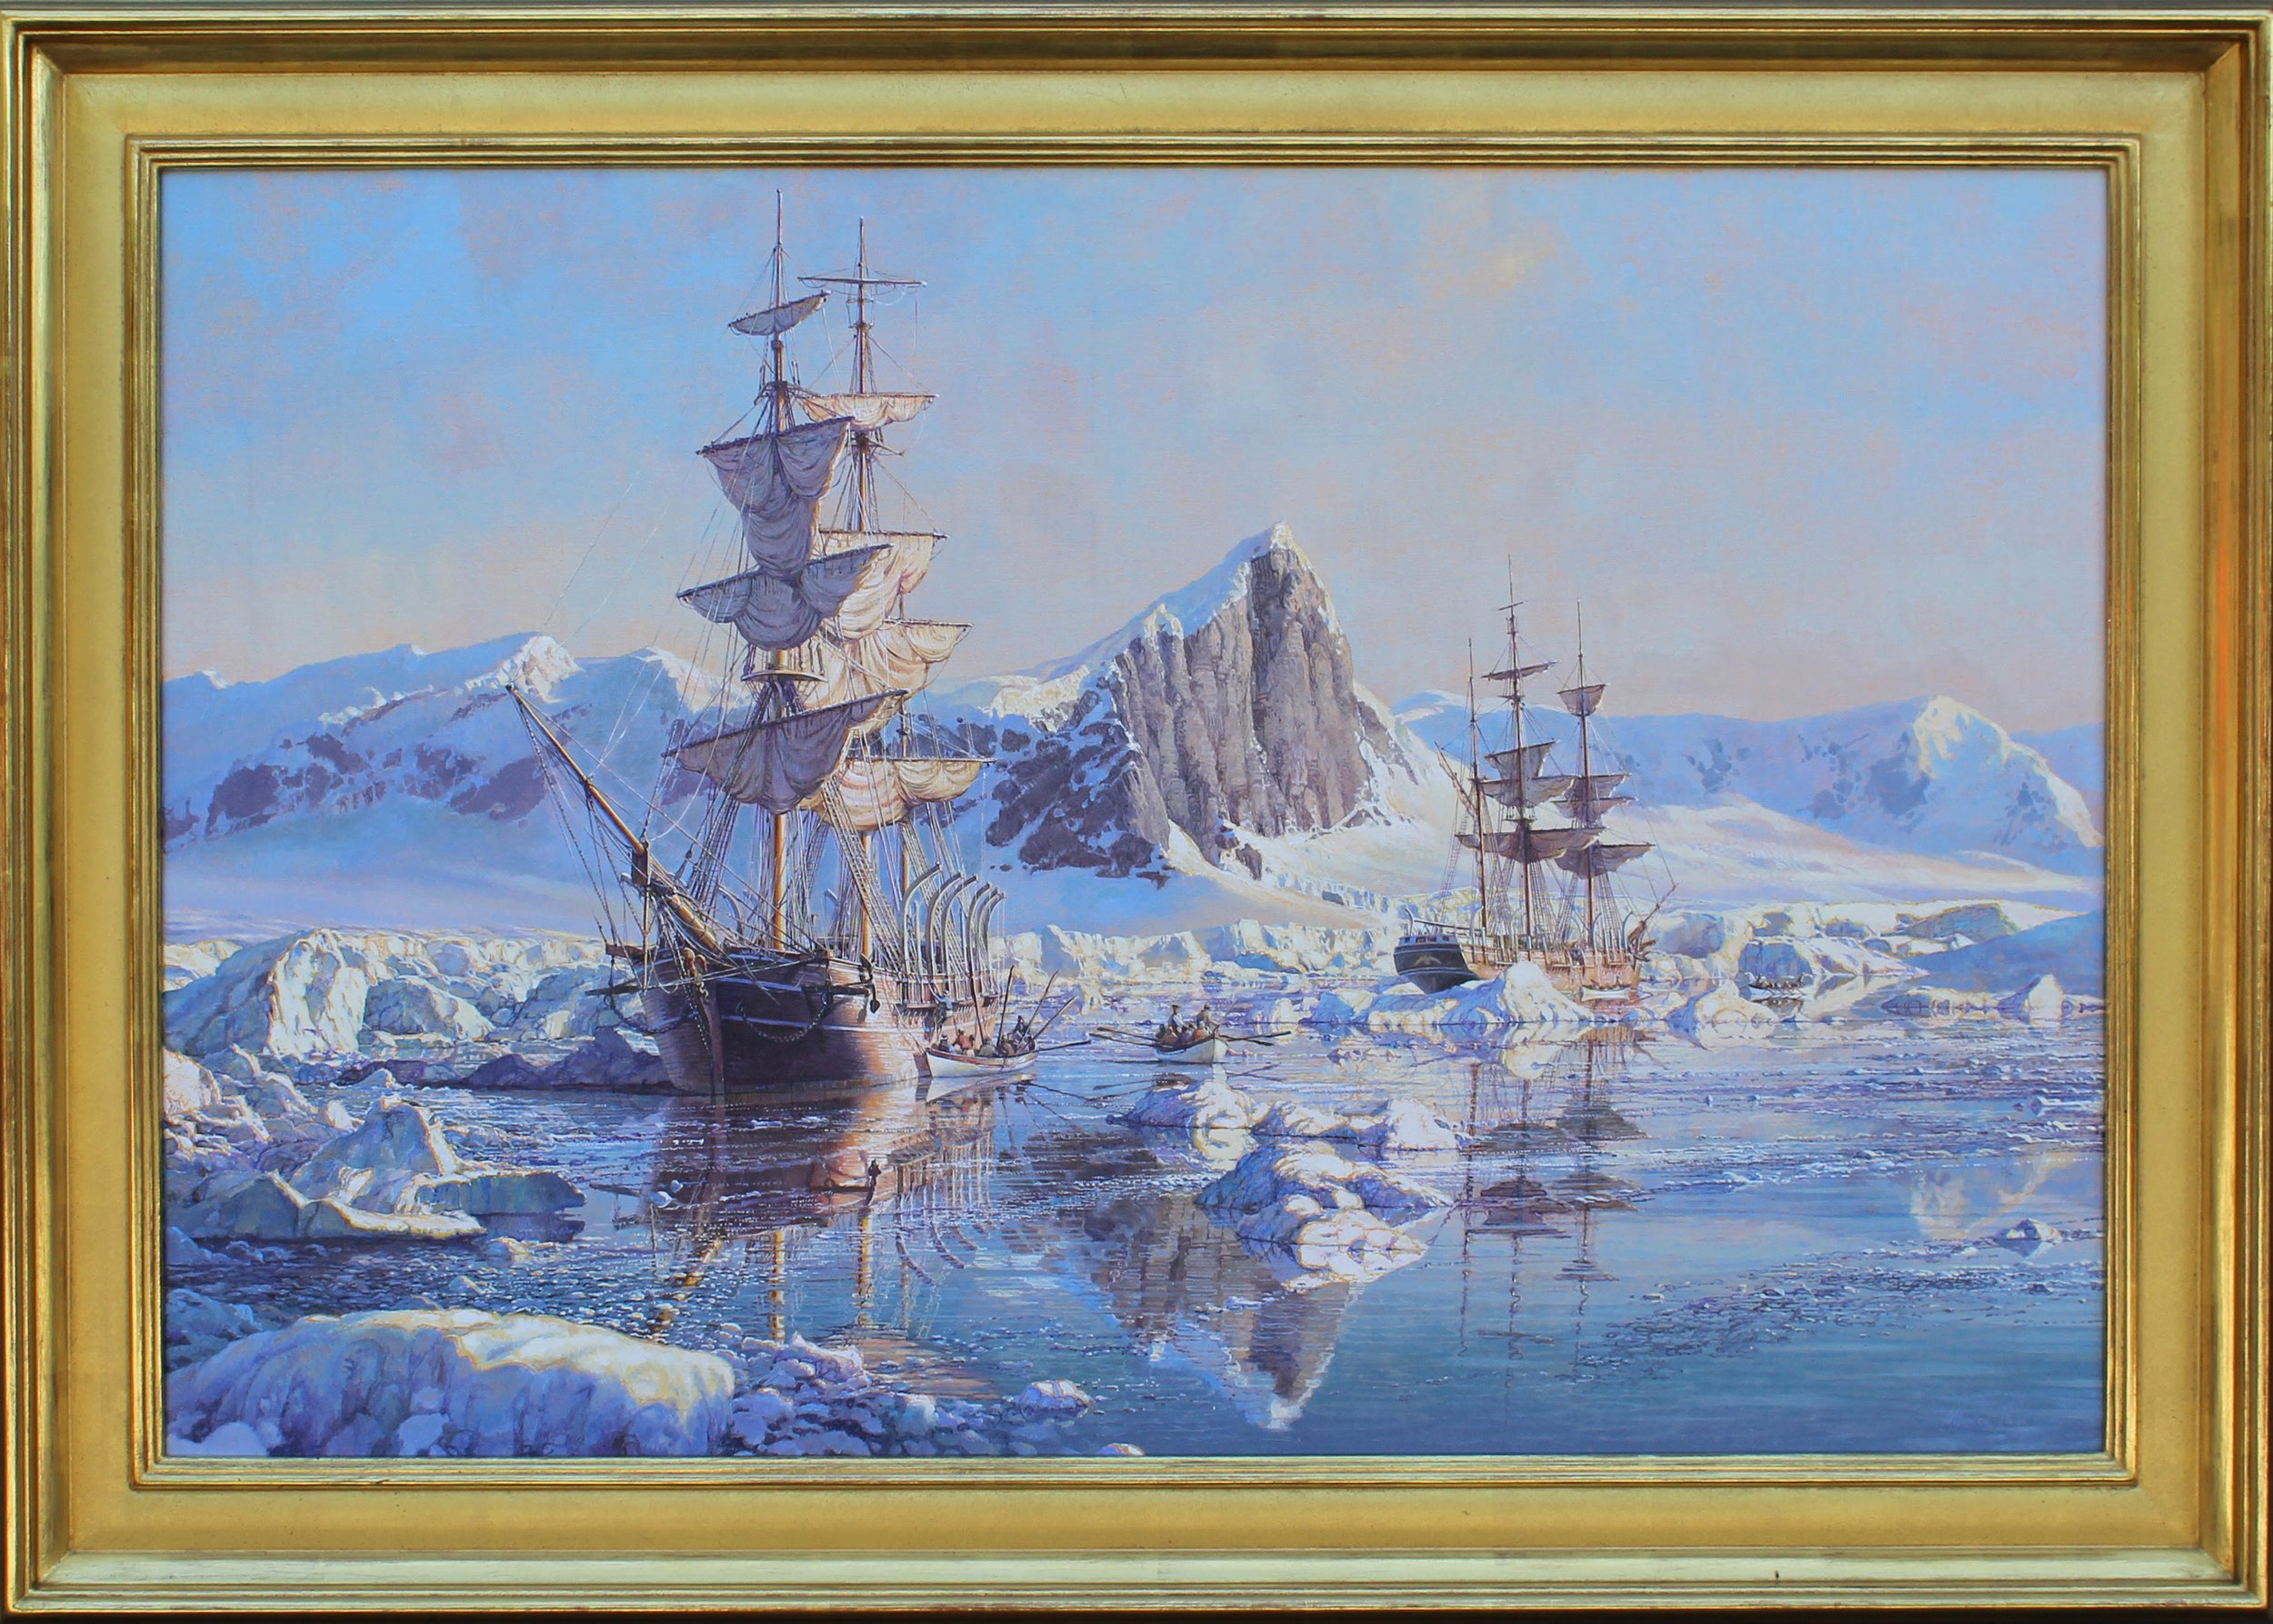 Arctic Whaling, Wanderer off Andreanof Islands,1884_Maarten Platje_24x36_$32,000.jpg